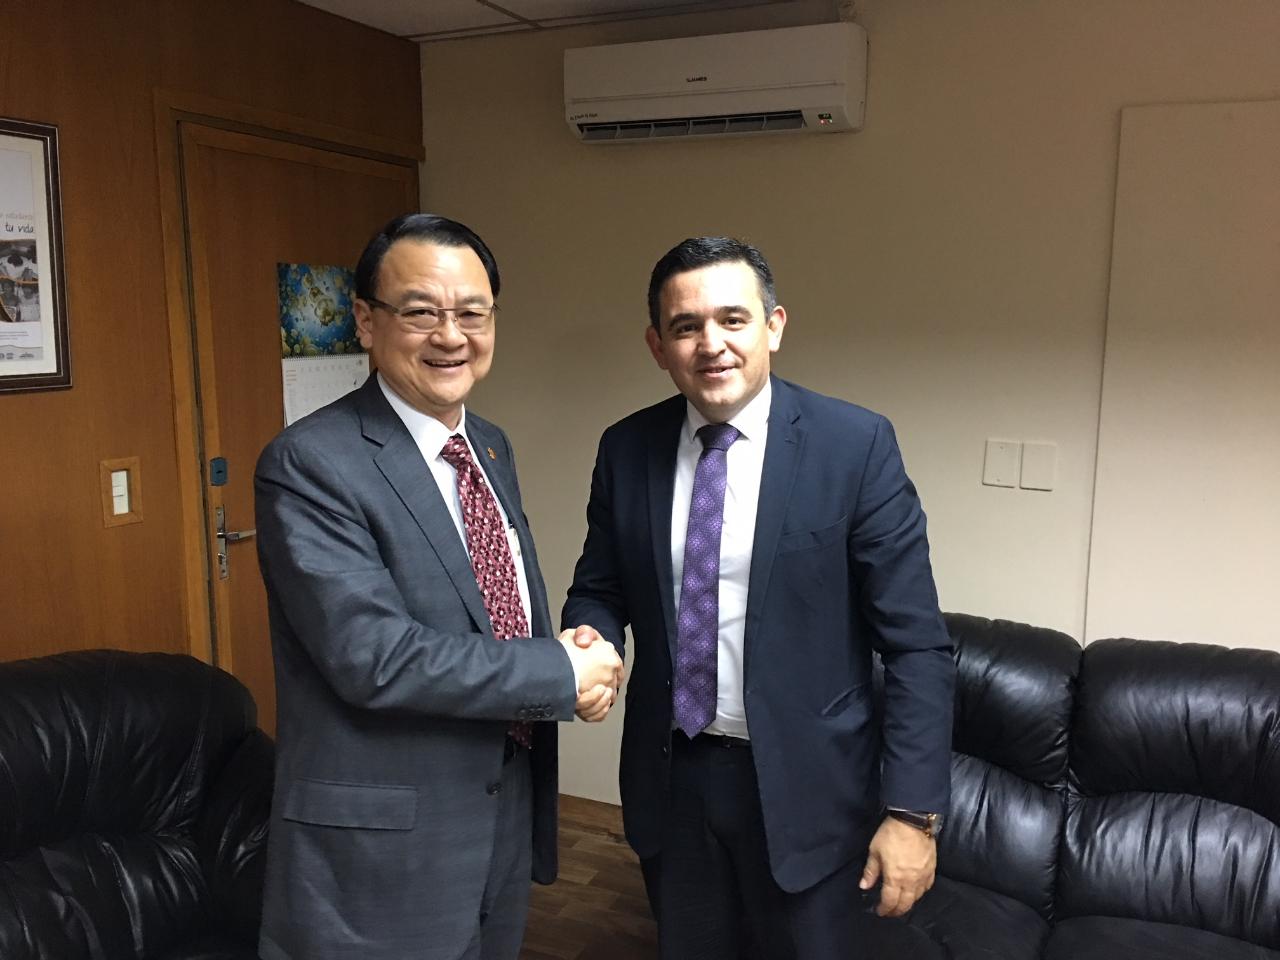 El Embajador de la República de China (Taiwán), Dr. Diego L. Chou, visitó al Ministro de Educación, Eduardo Petta el día 11 de septiembre, 2018. Hablaron sobre temas de la educación científica y tecnológica de Taiwán y a reforzar la cooperación bilateral en el area de educación.